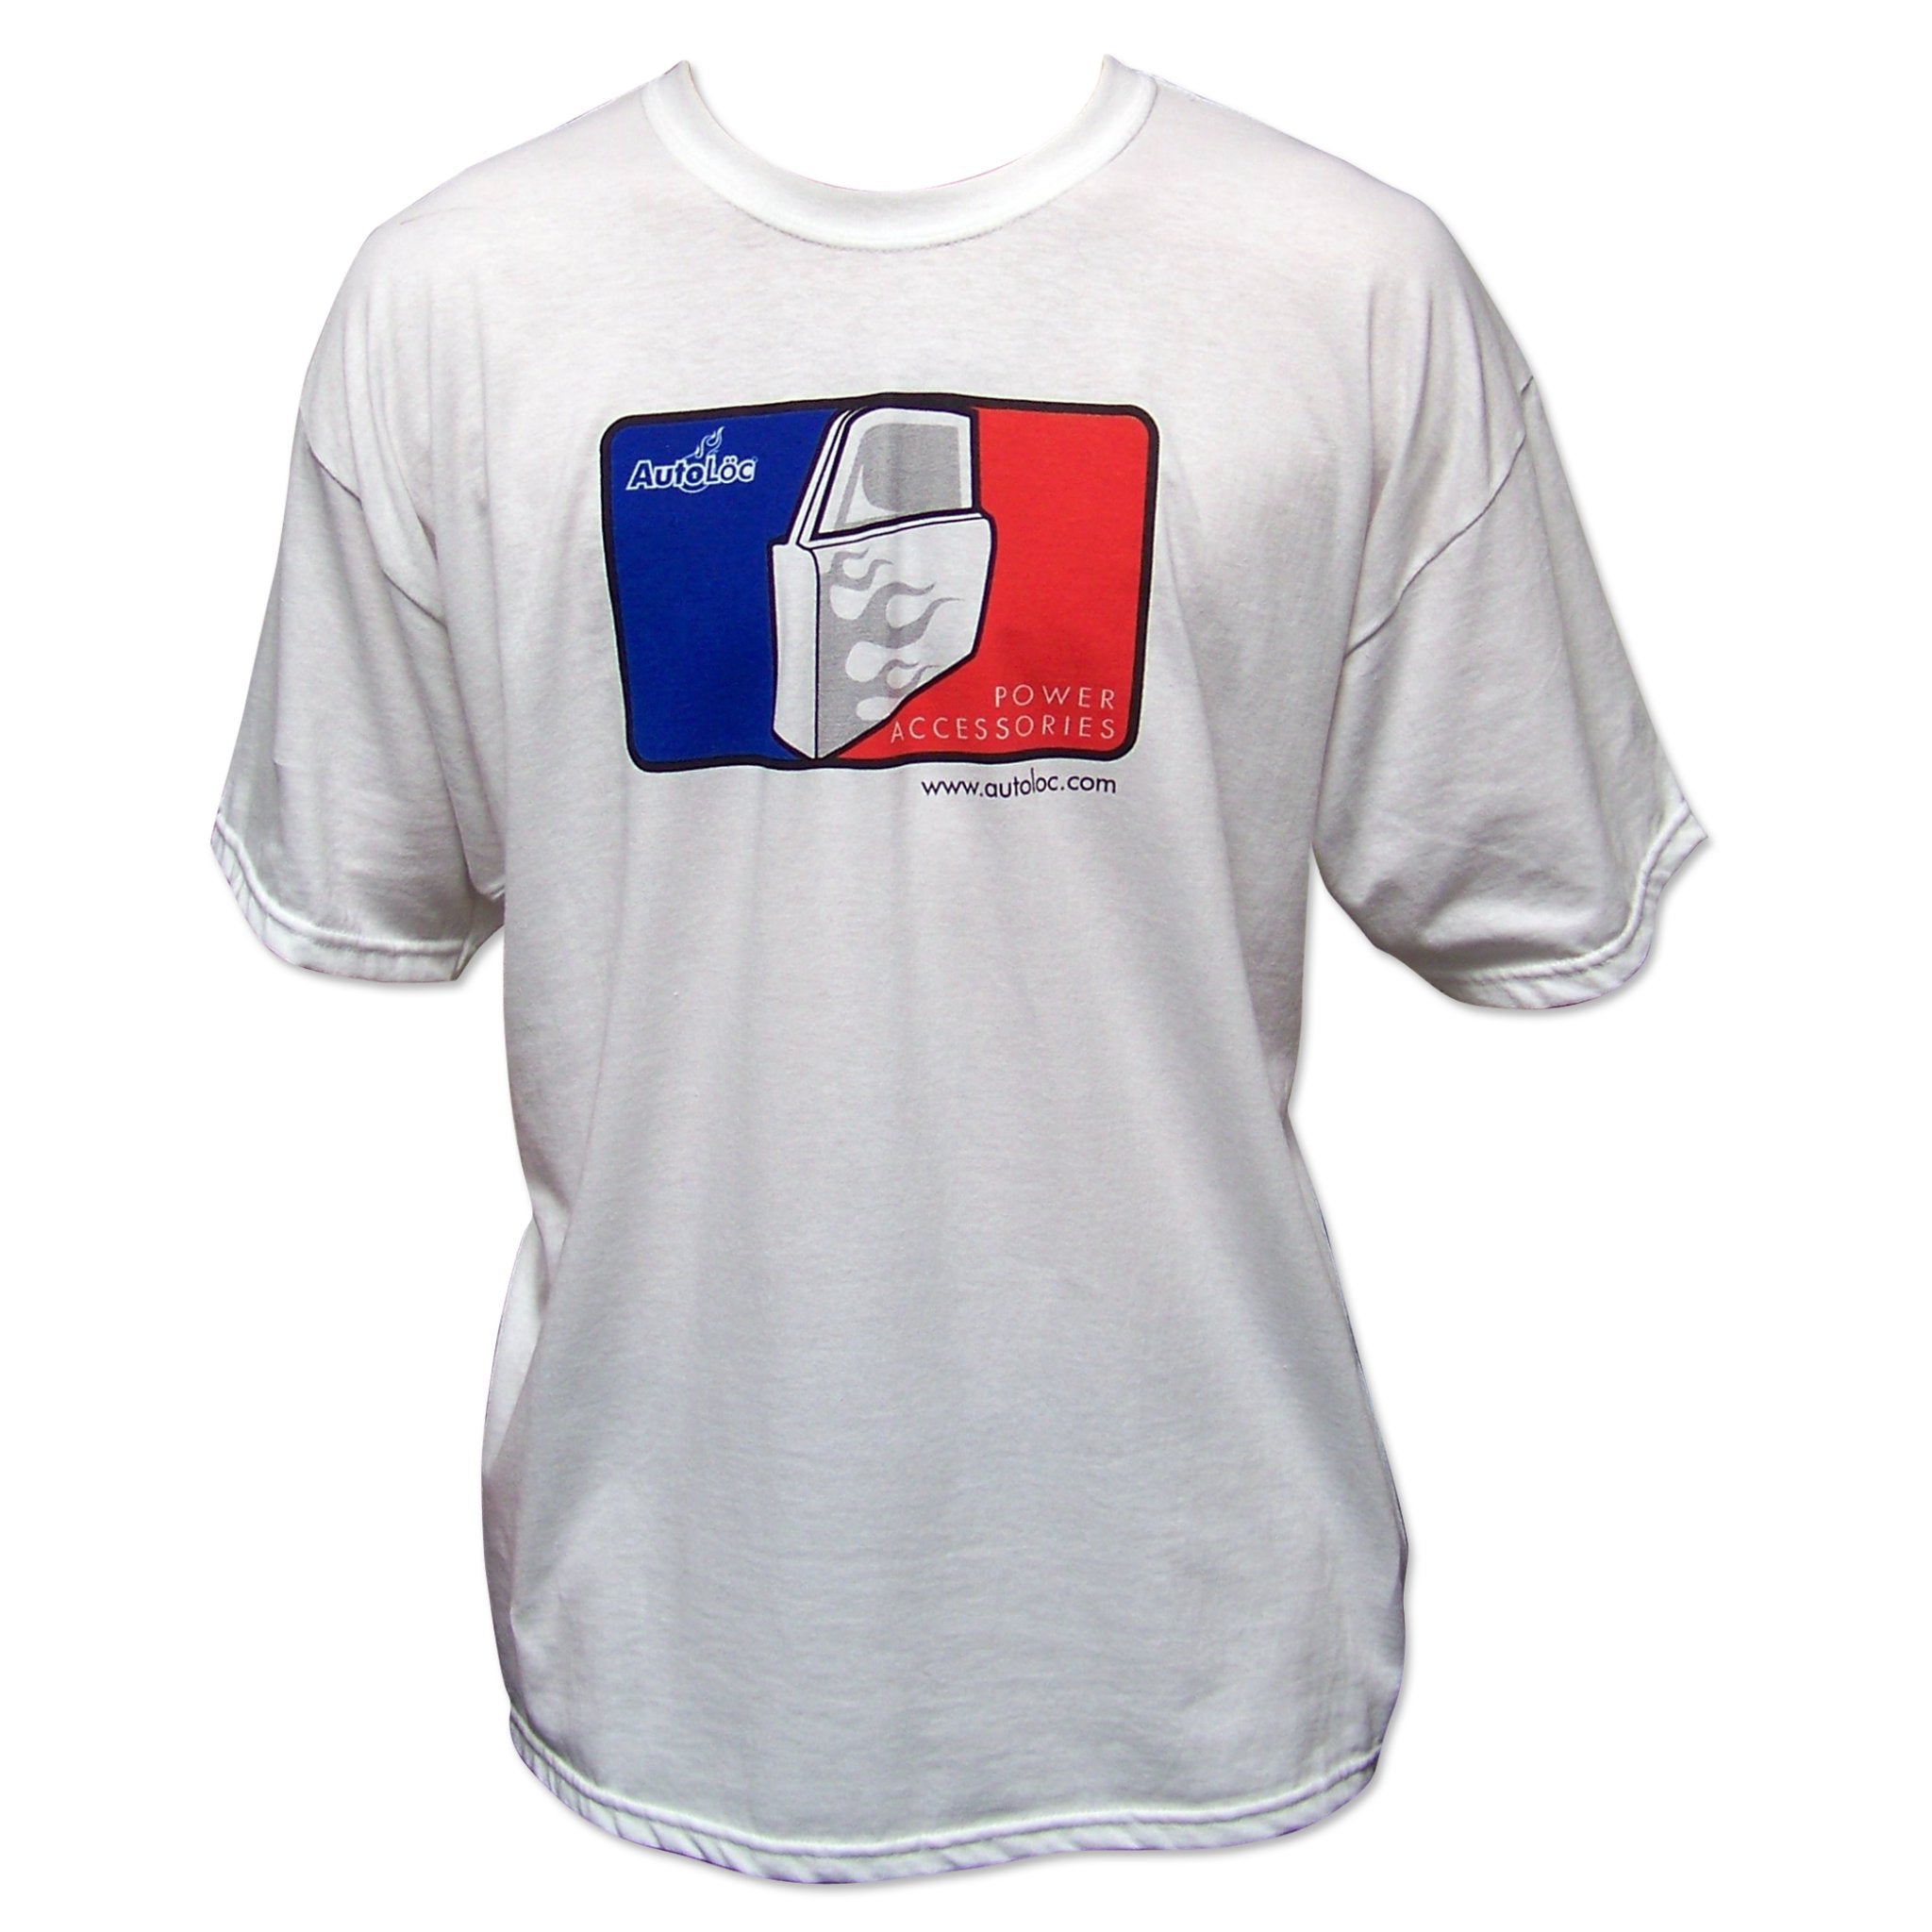 Camiseta de algodón de manga corta de la Liga Mayor de Béisbol AutoLoc personalizada para adultos blanca XL